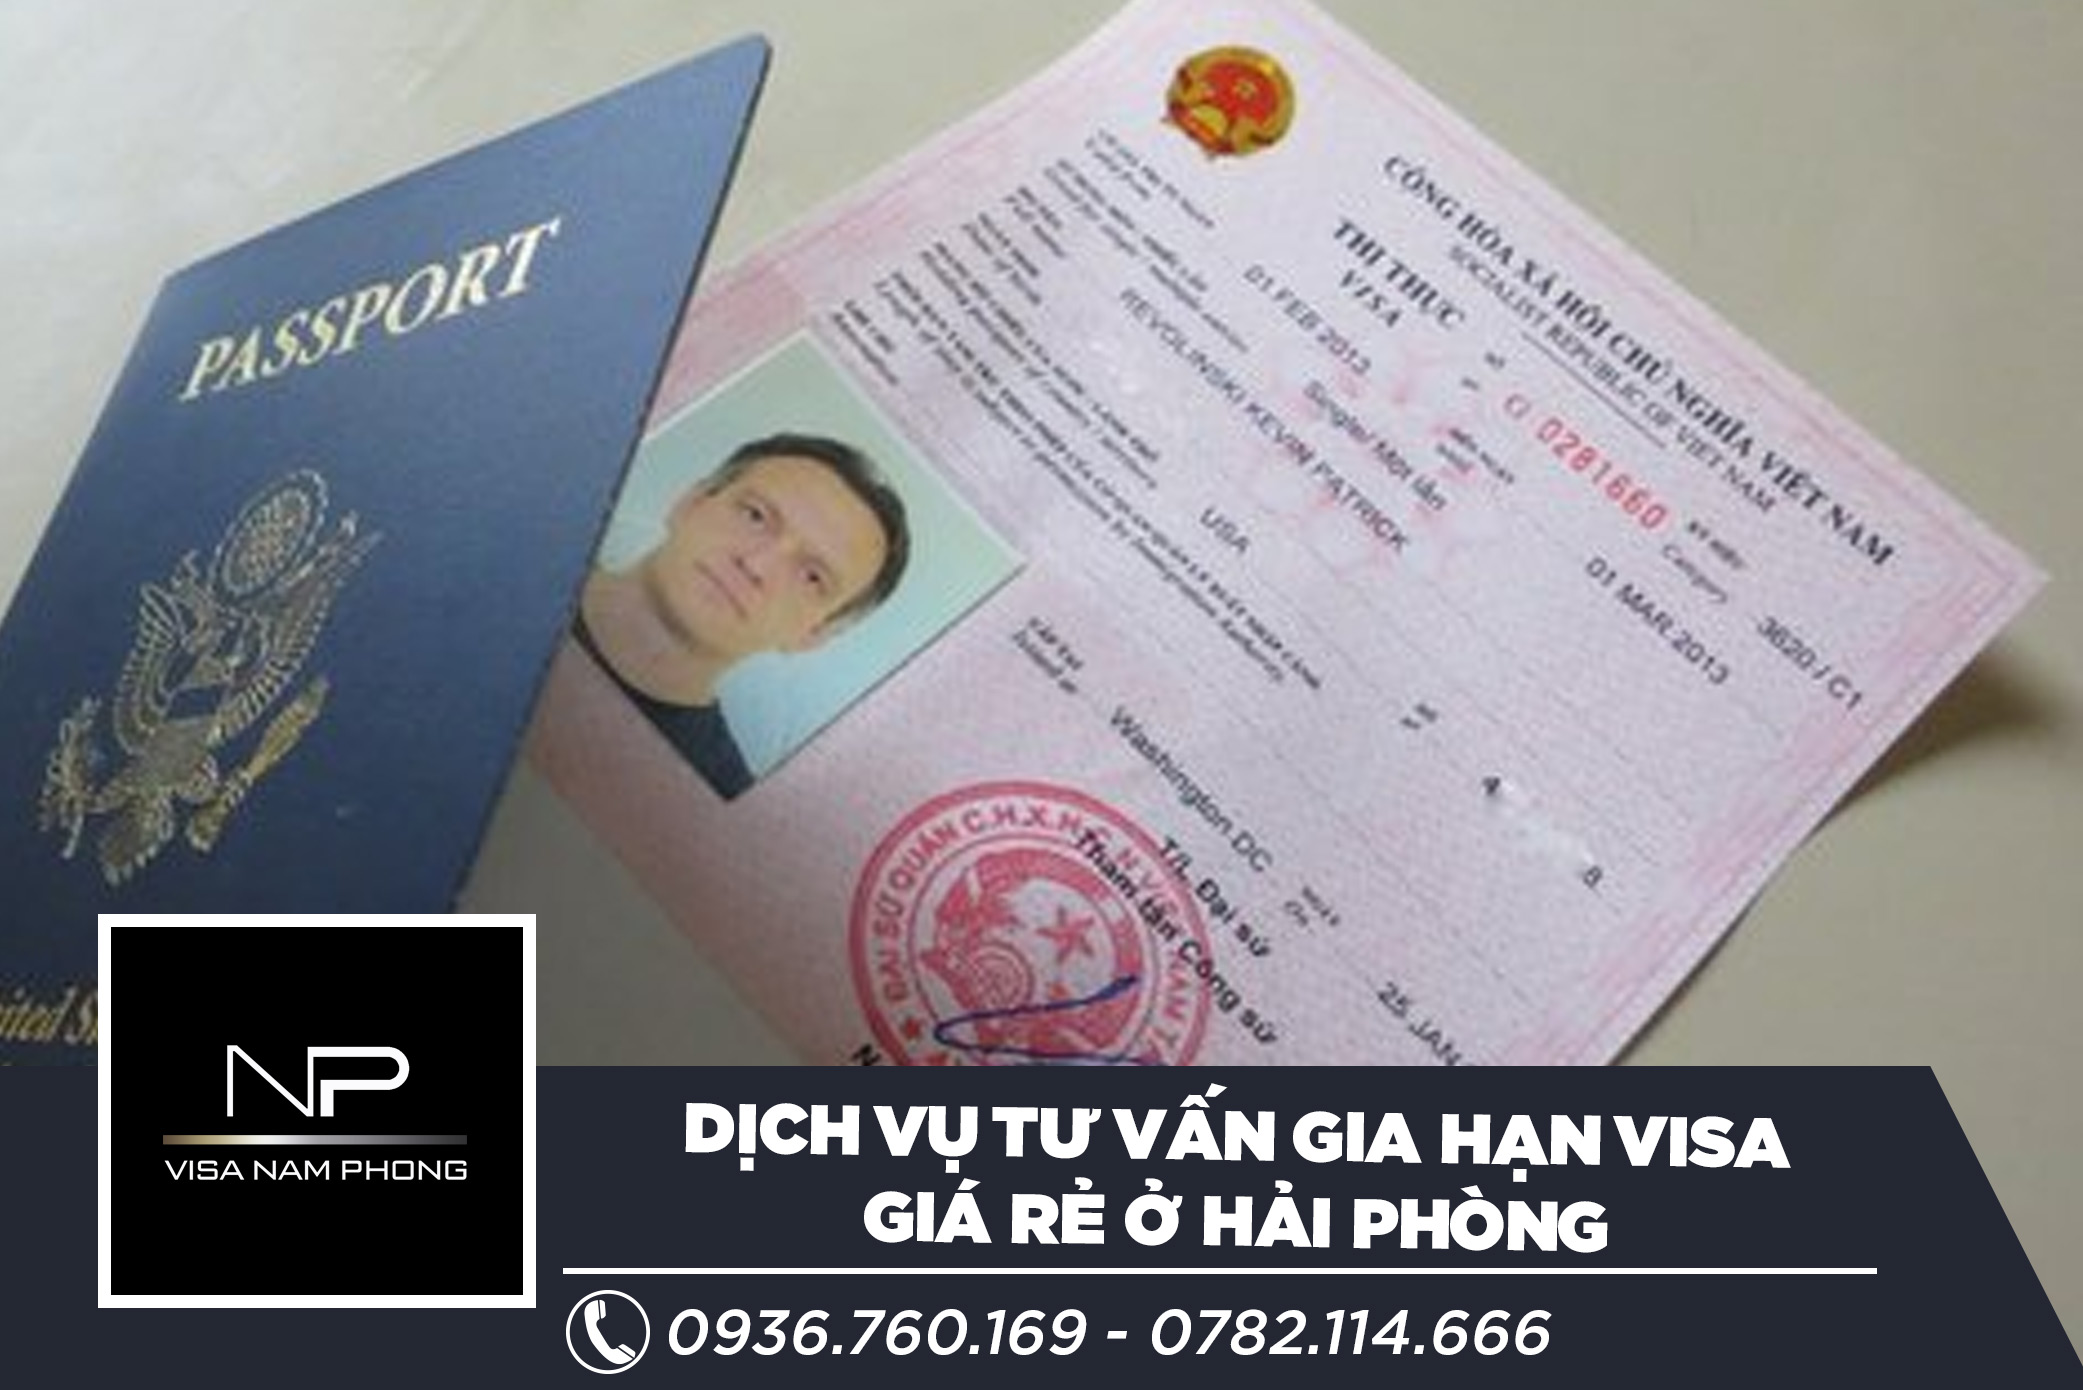 Dịch vụ tư vấn gia hạn visa giá rẻ ở hải phòng